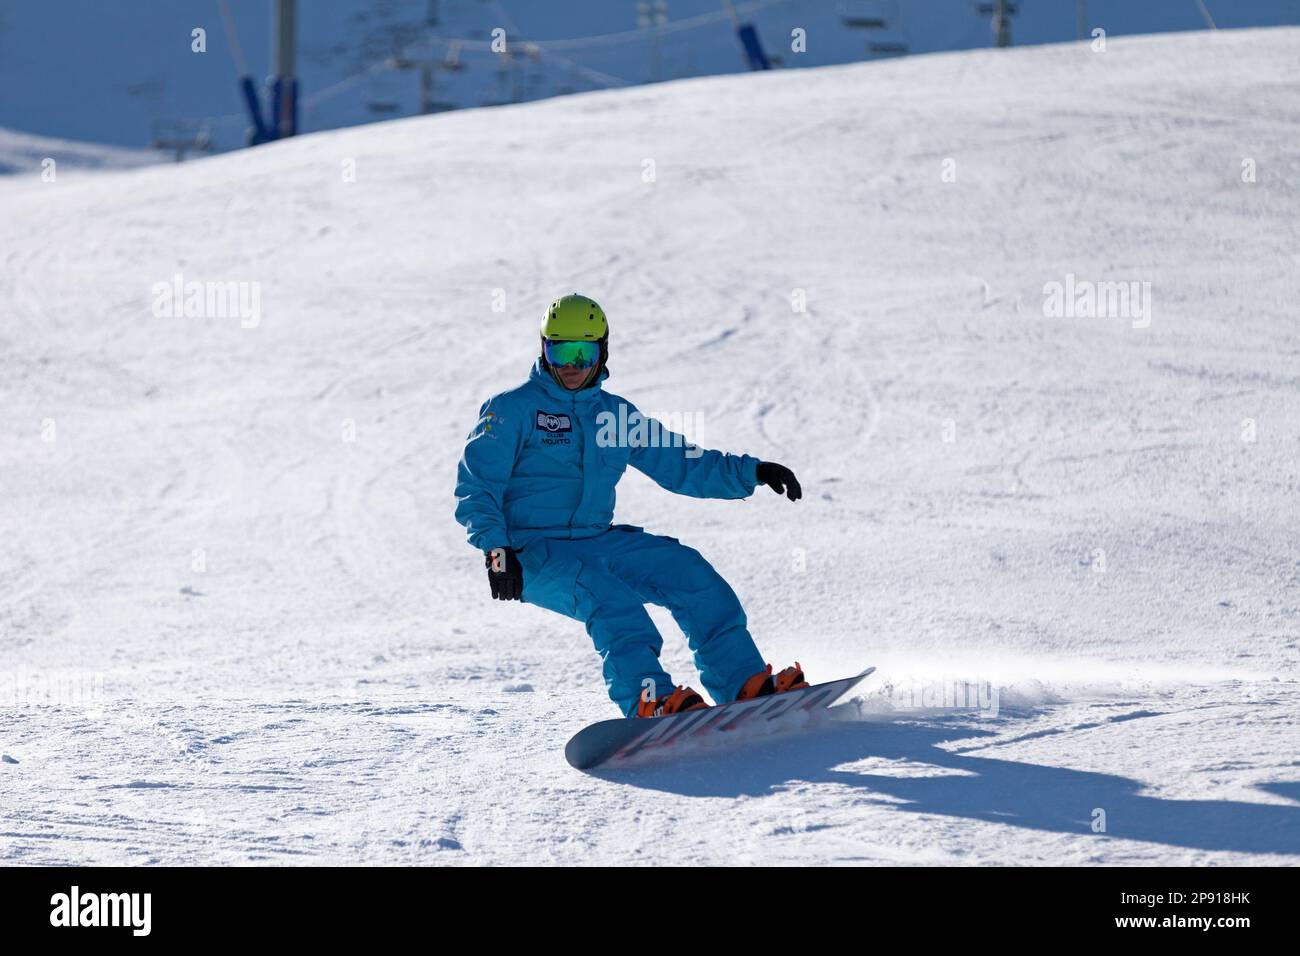 Pas de la Casa, Andorra, Dezember 03 2019: Snowboarder auf der Skipiste von Grandvalira, dem größten Skigebiet in den Pyrenäen und Südeuropa. Stockfoto